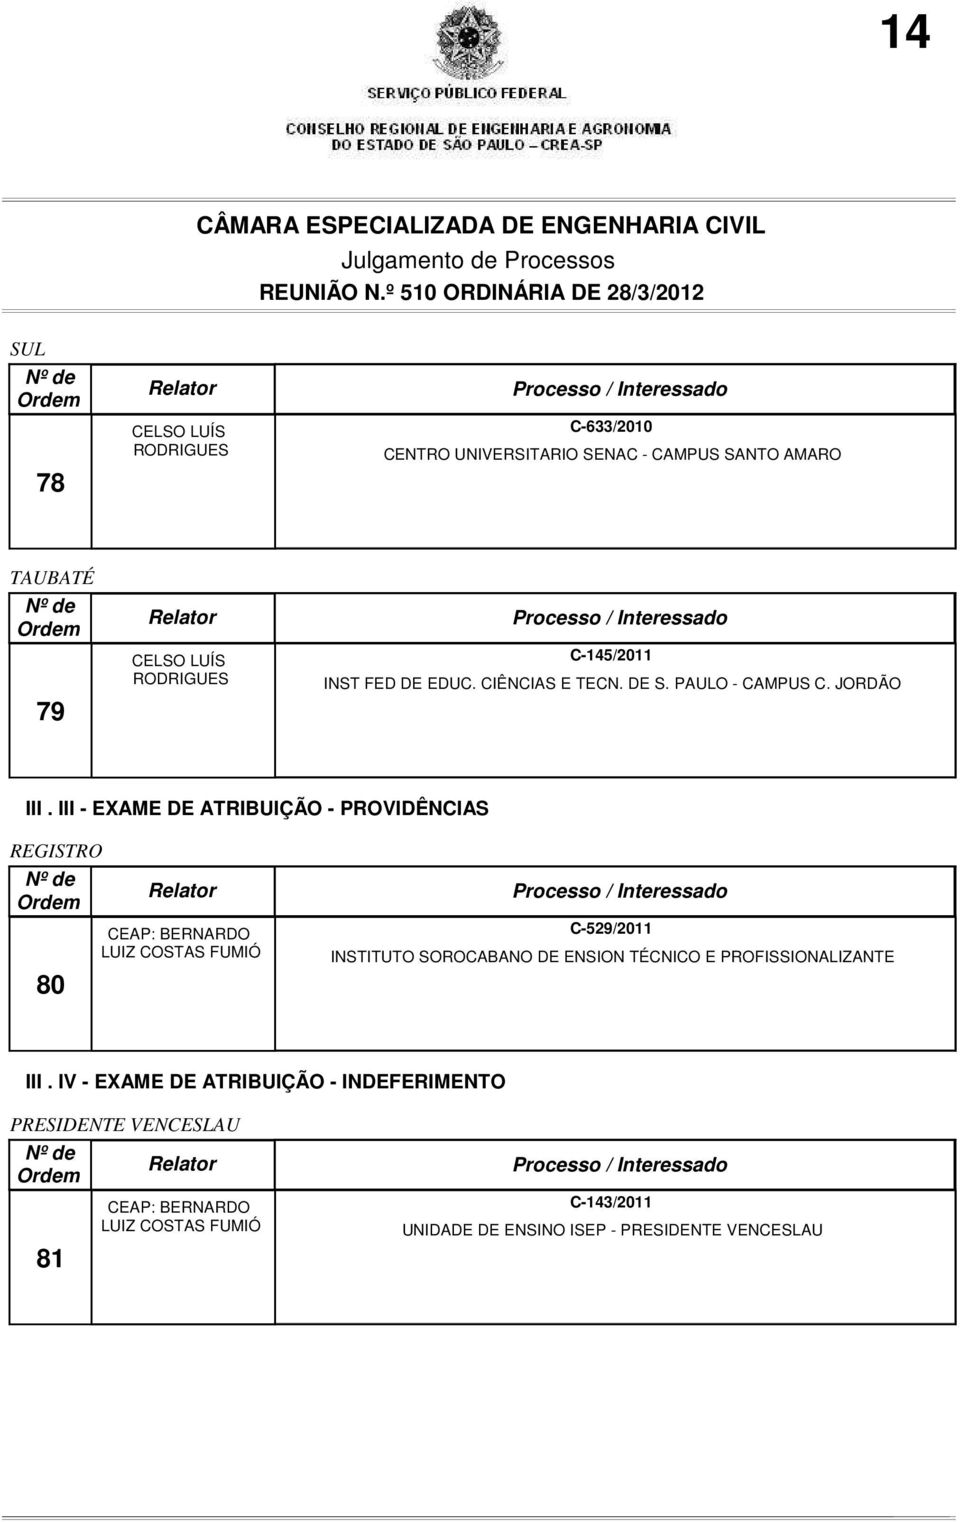 III - EXAME DE ATRIBUIÇÃO - PROVIDÊNCIAS REGISTRO 80 CEAP: BERNARDO LUIZ COSTAS FUMIÓ C-529/2011 INSTITUTO SOROCABANO